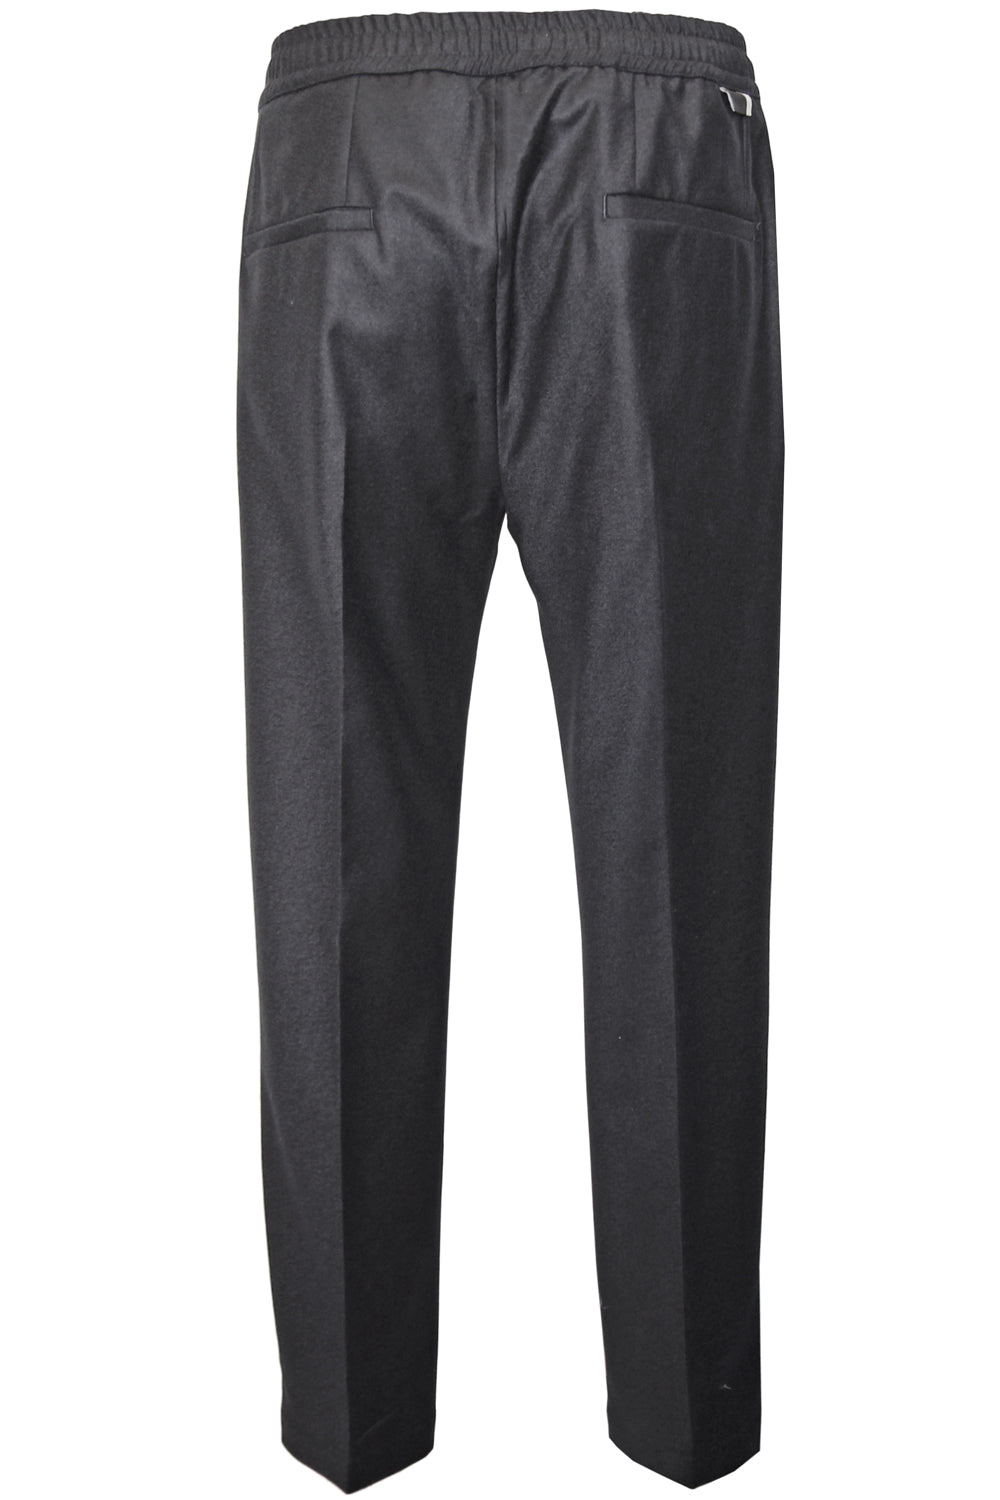 LOW BRAND Pantalone in flanello con elastico